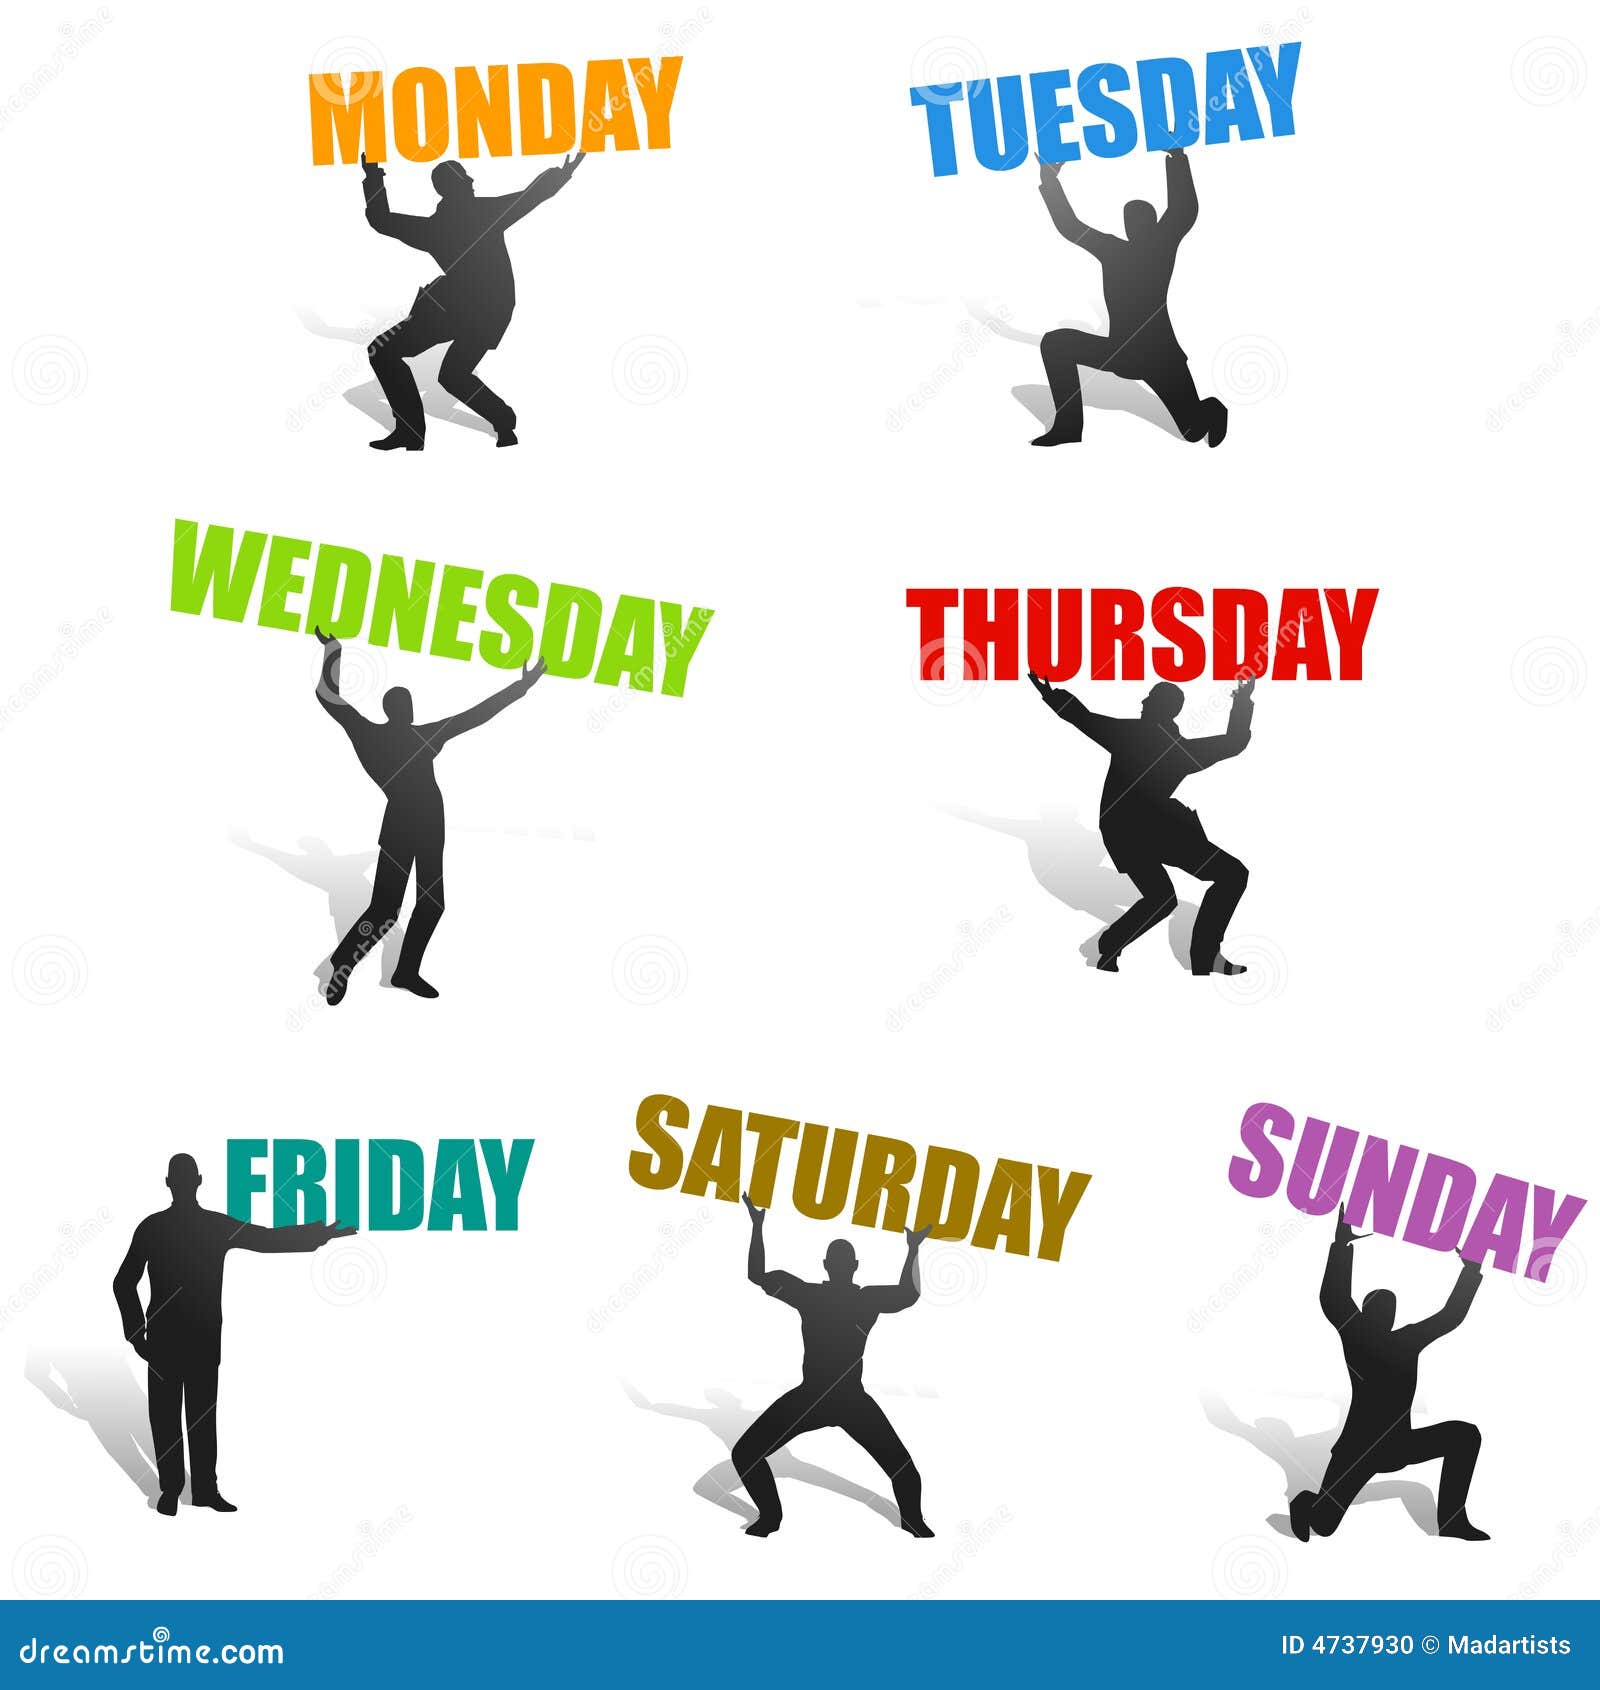 Включи понедельник вторник пятница. Дни недели. Дни недели на английском. Дни недели картинки. Ассоциации с днями недели.